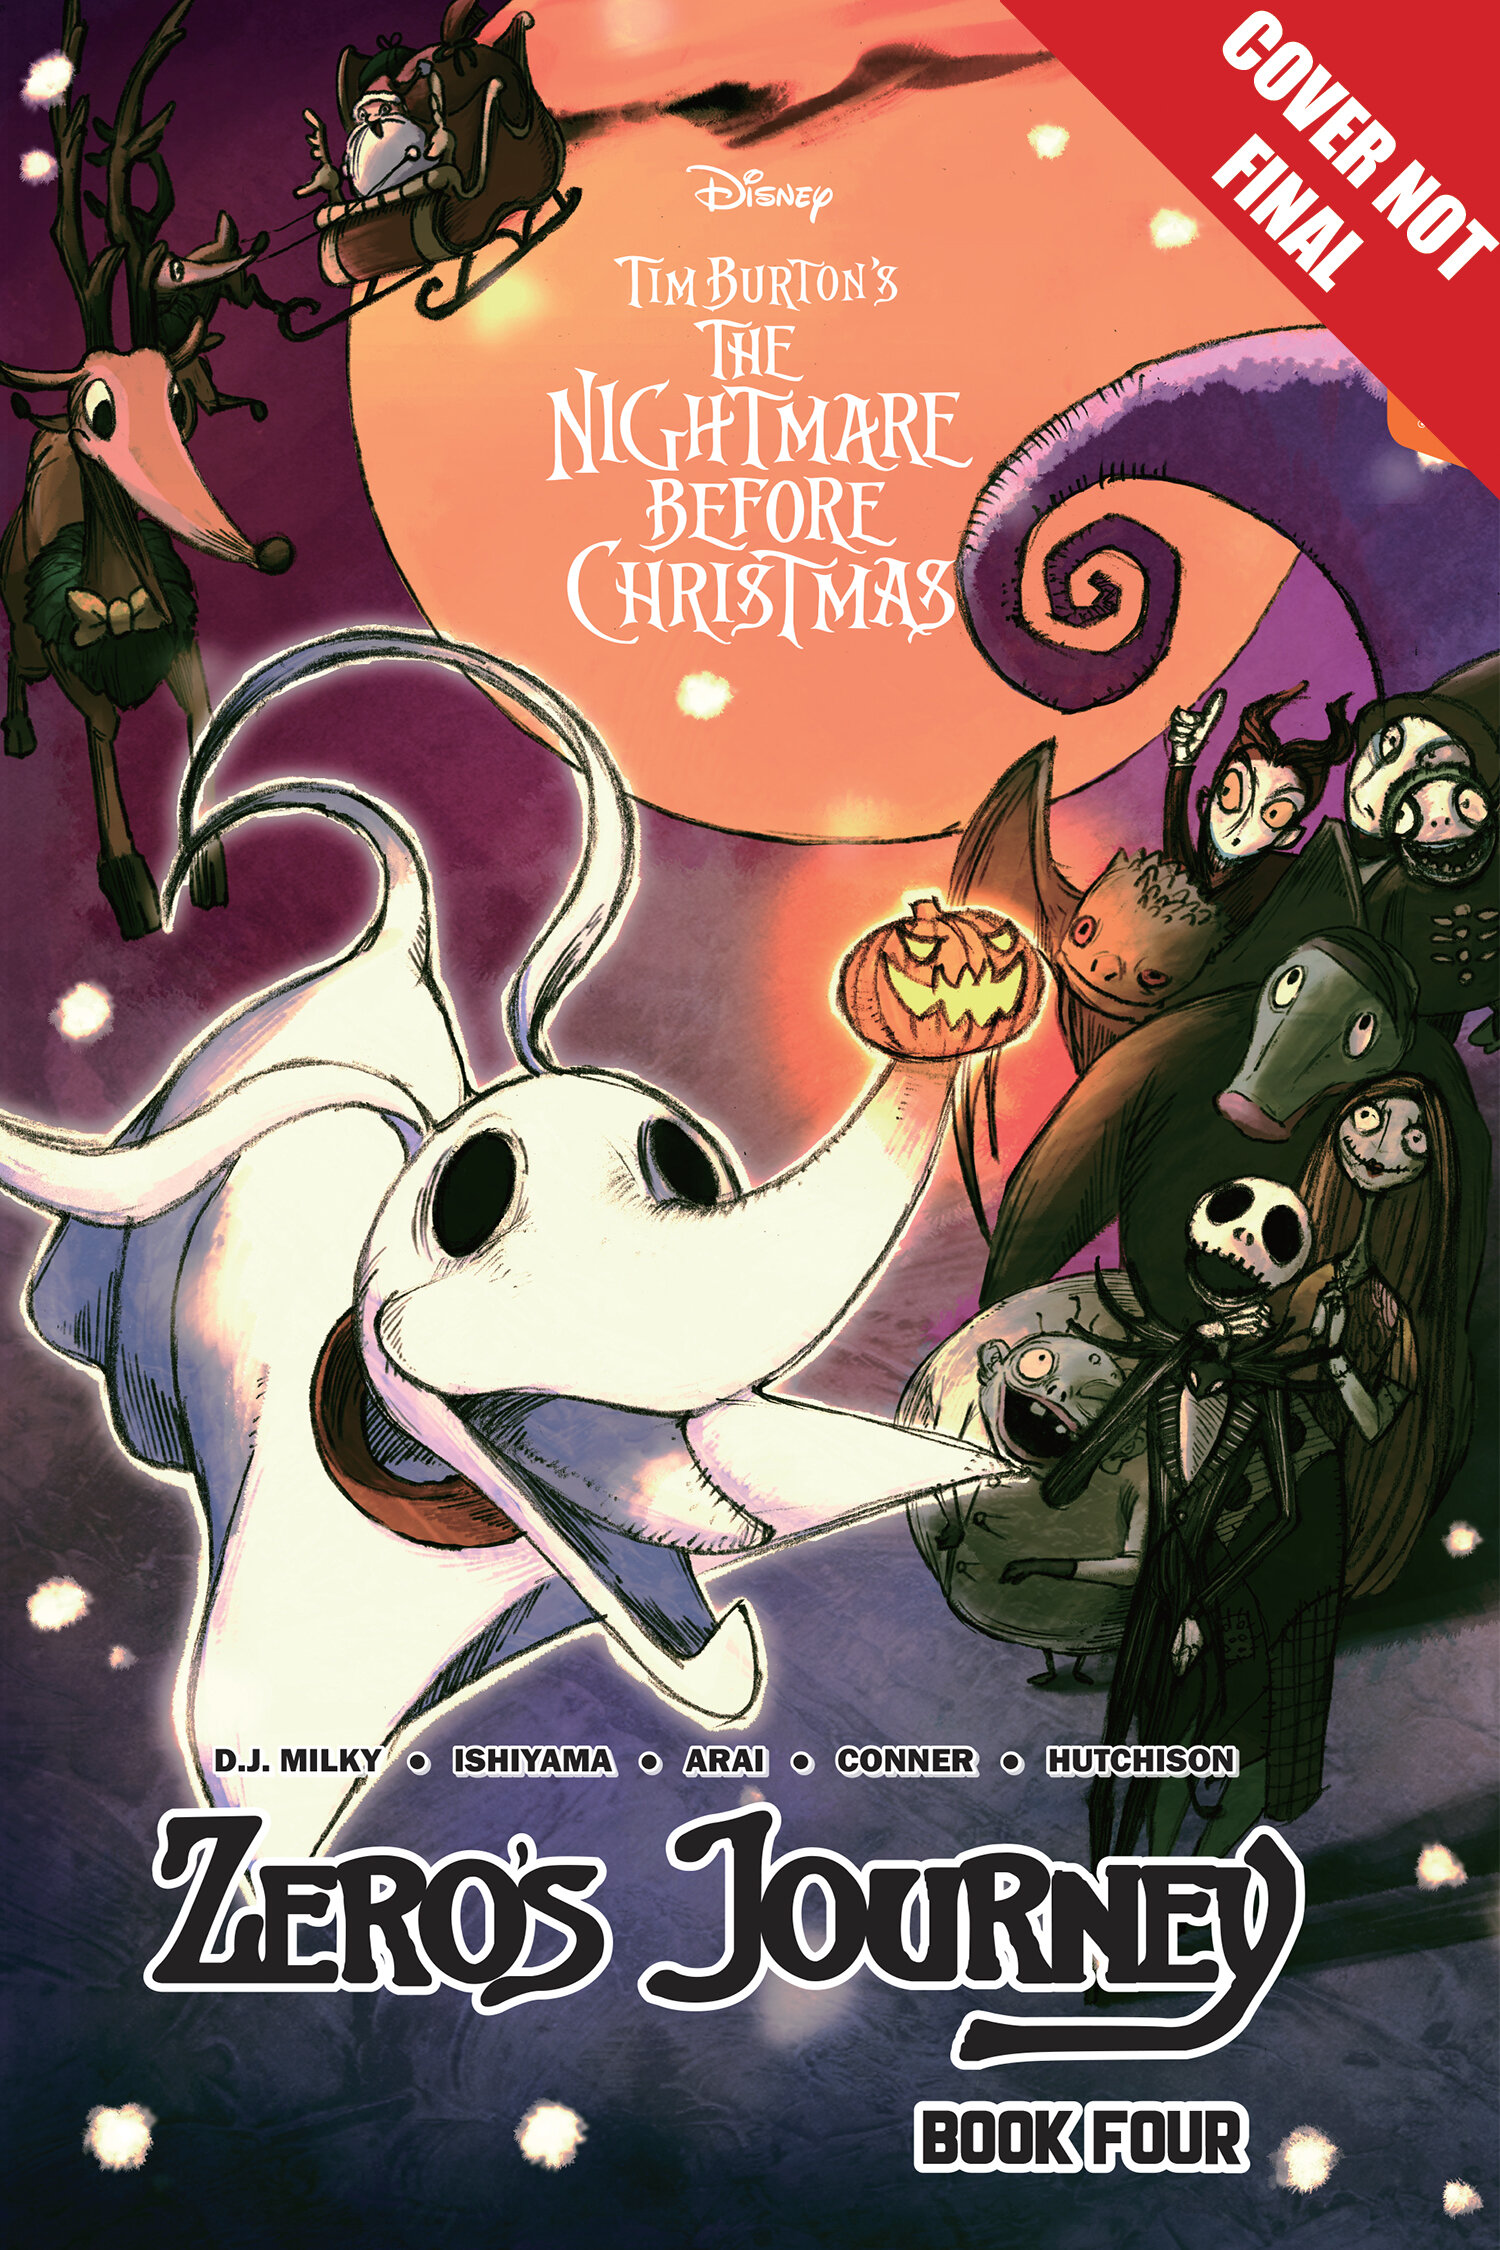  Disney Manga: The Nightmare Before Christmas - Zero's Journey, Book 4